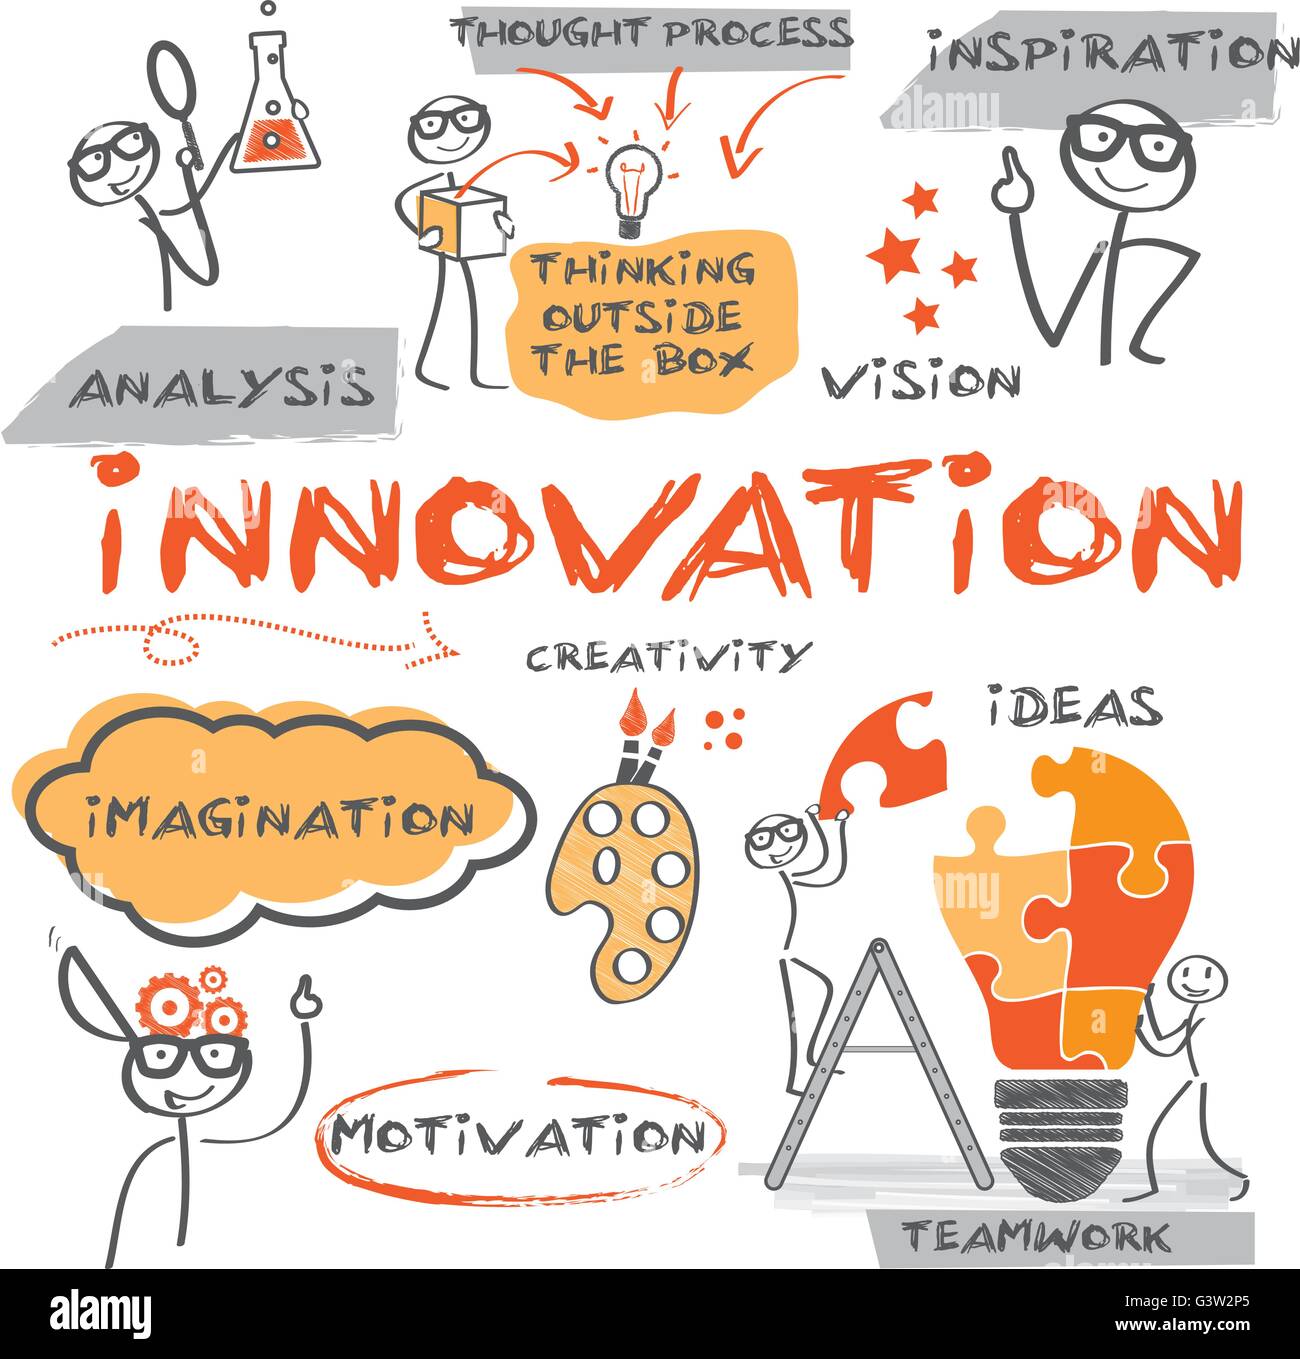 Innovation-Konzept. Diagramm mit Keywords und handgezeichneten Figuren Stock Vektor